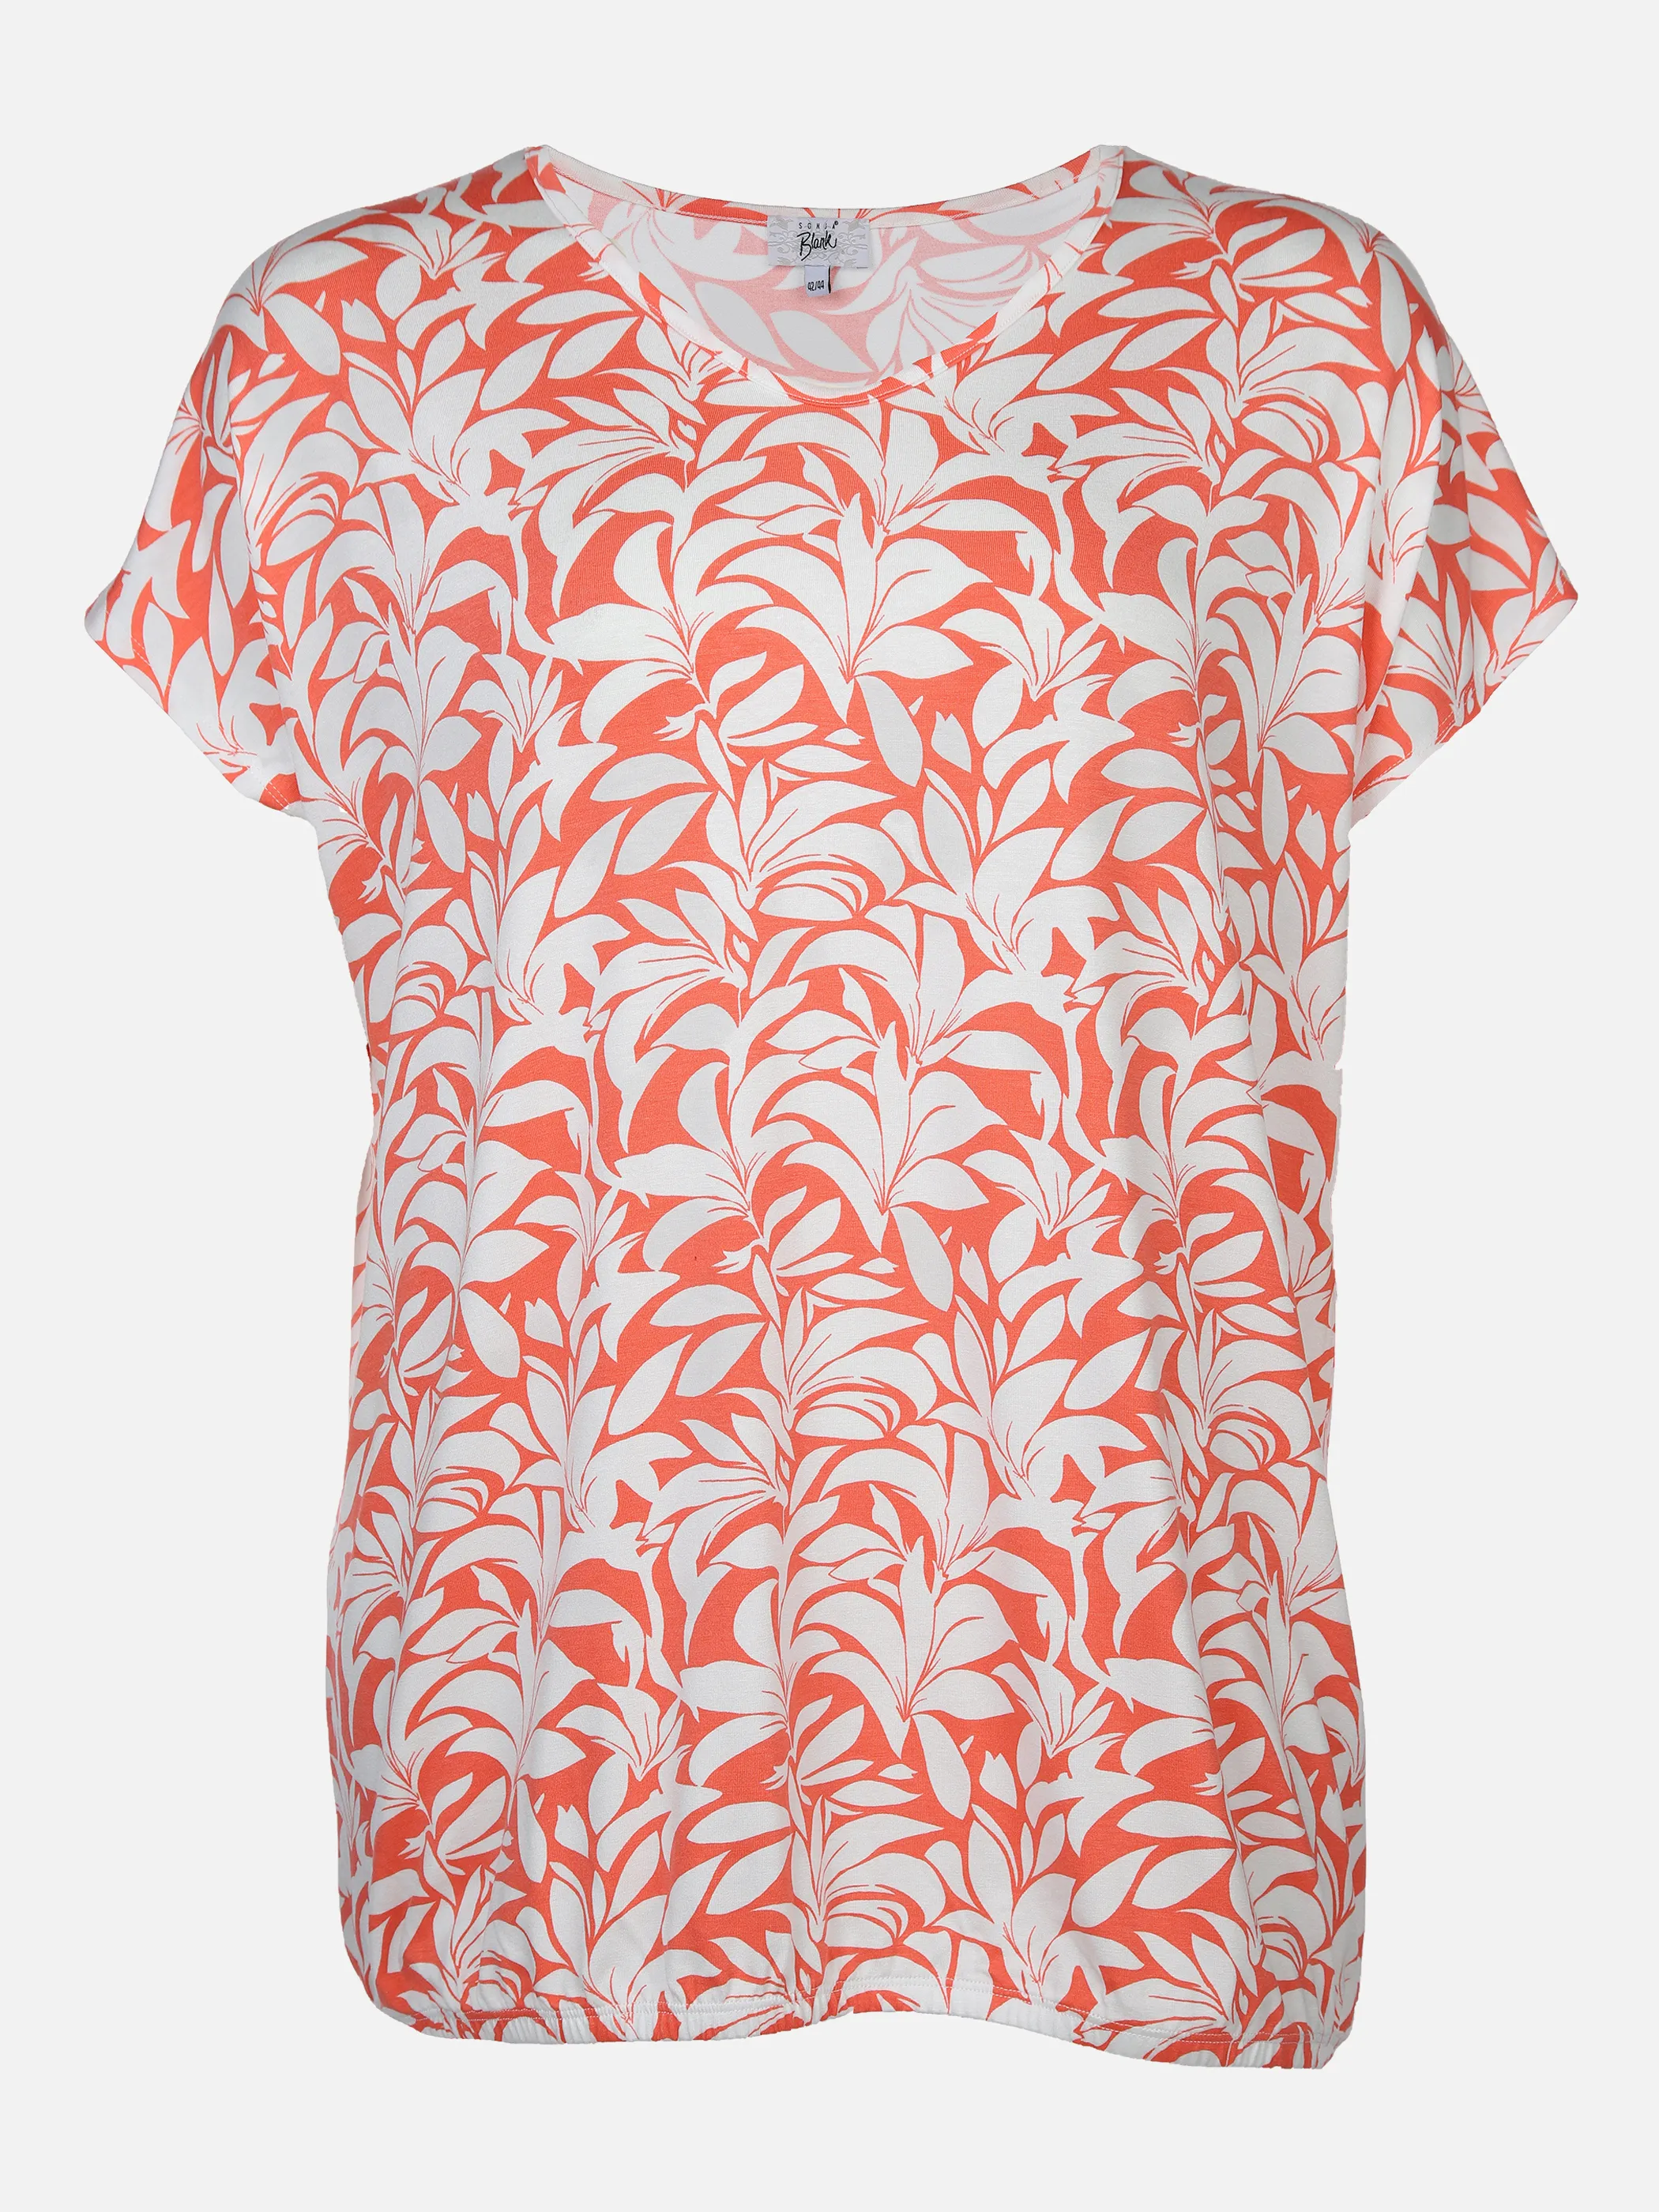 Sonja Blank Da-gr.Gr.T-Shirt m.Print Orange 878937 KORALLE/OF 1